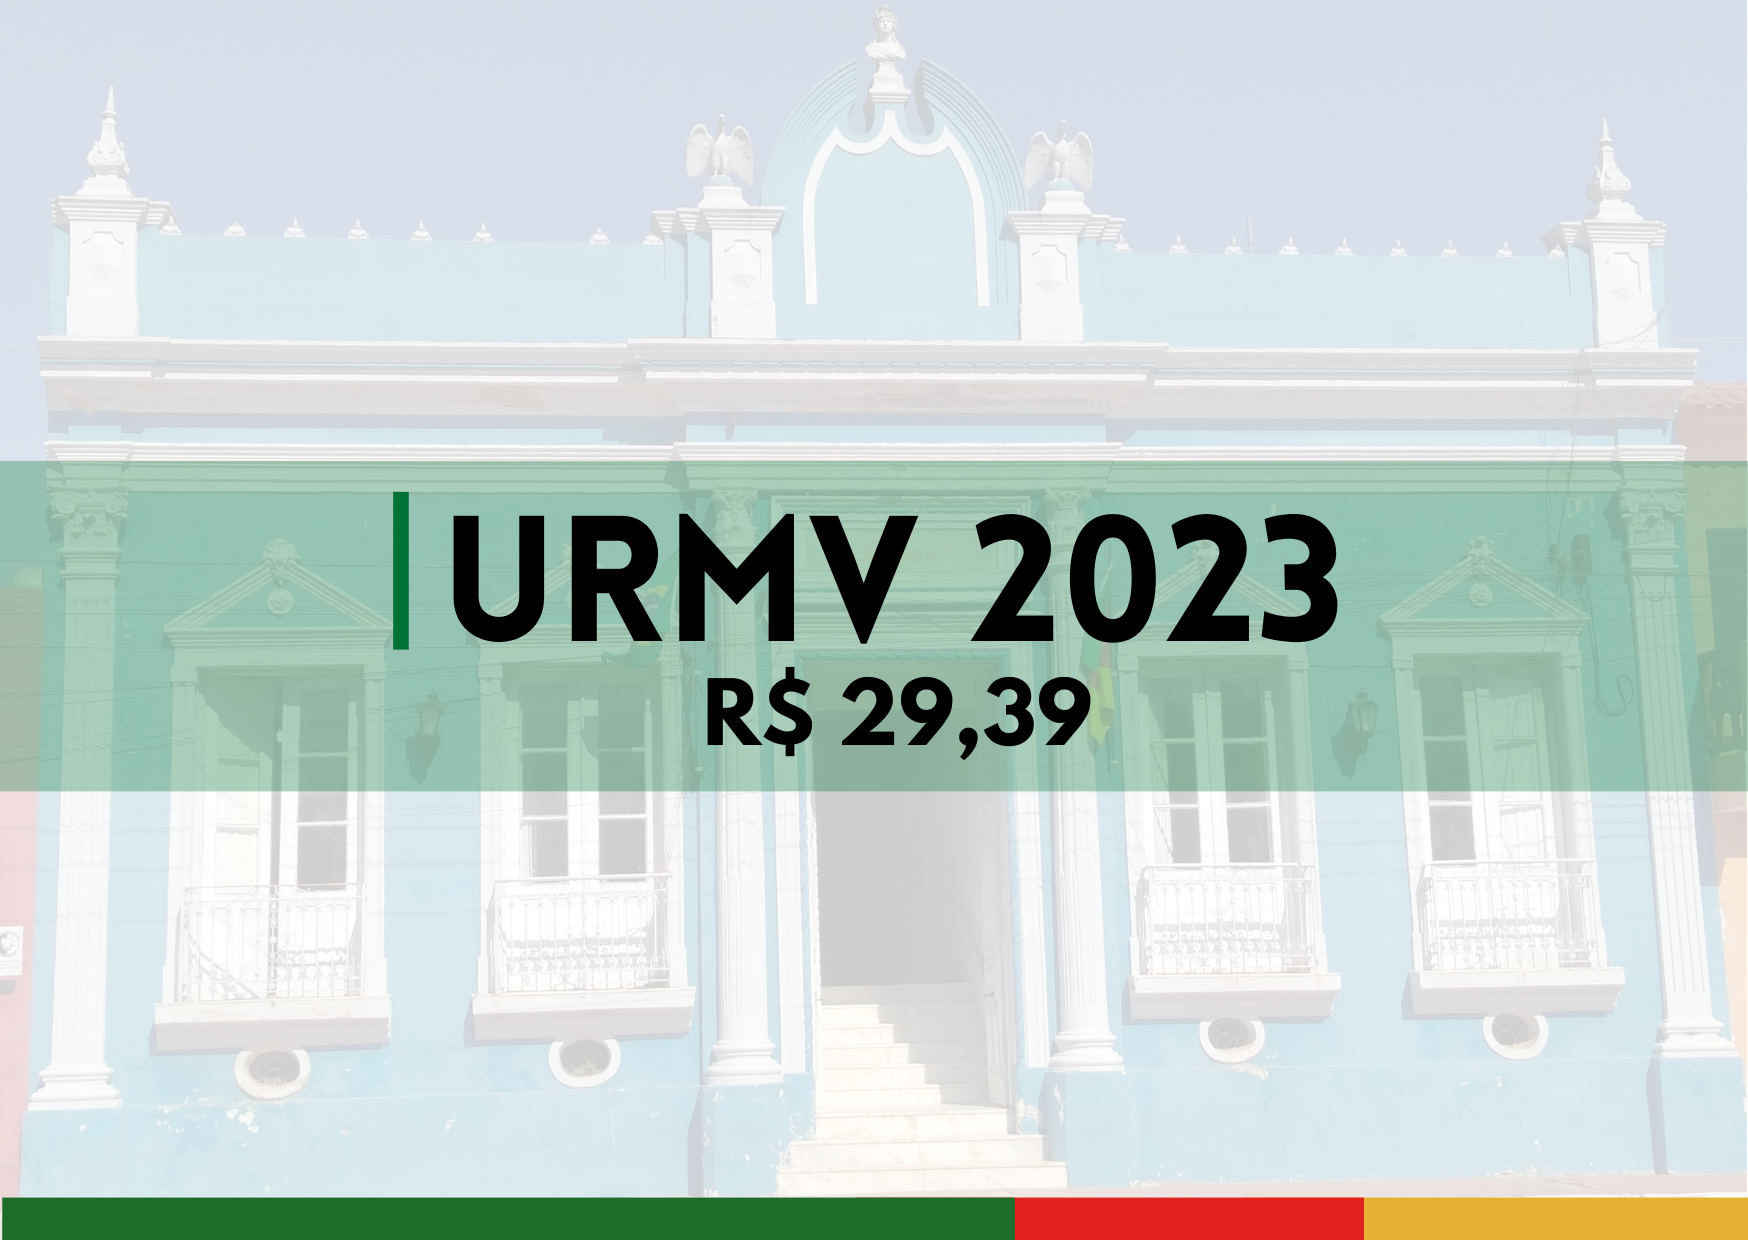 Determina valor URMV 2023